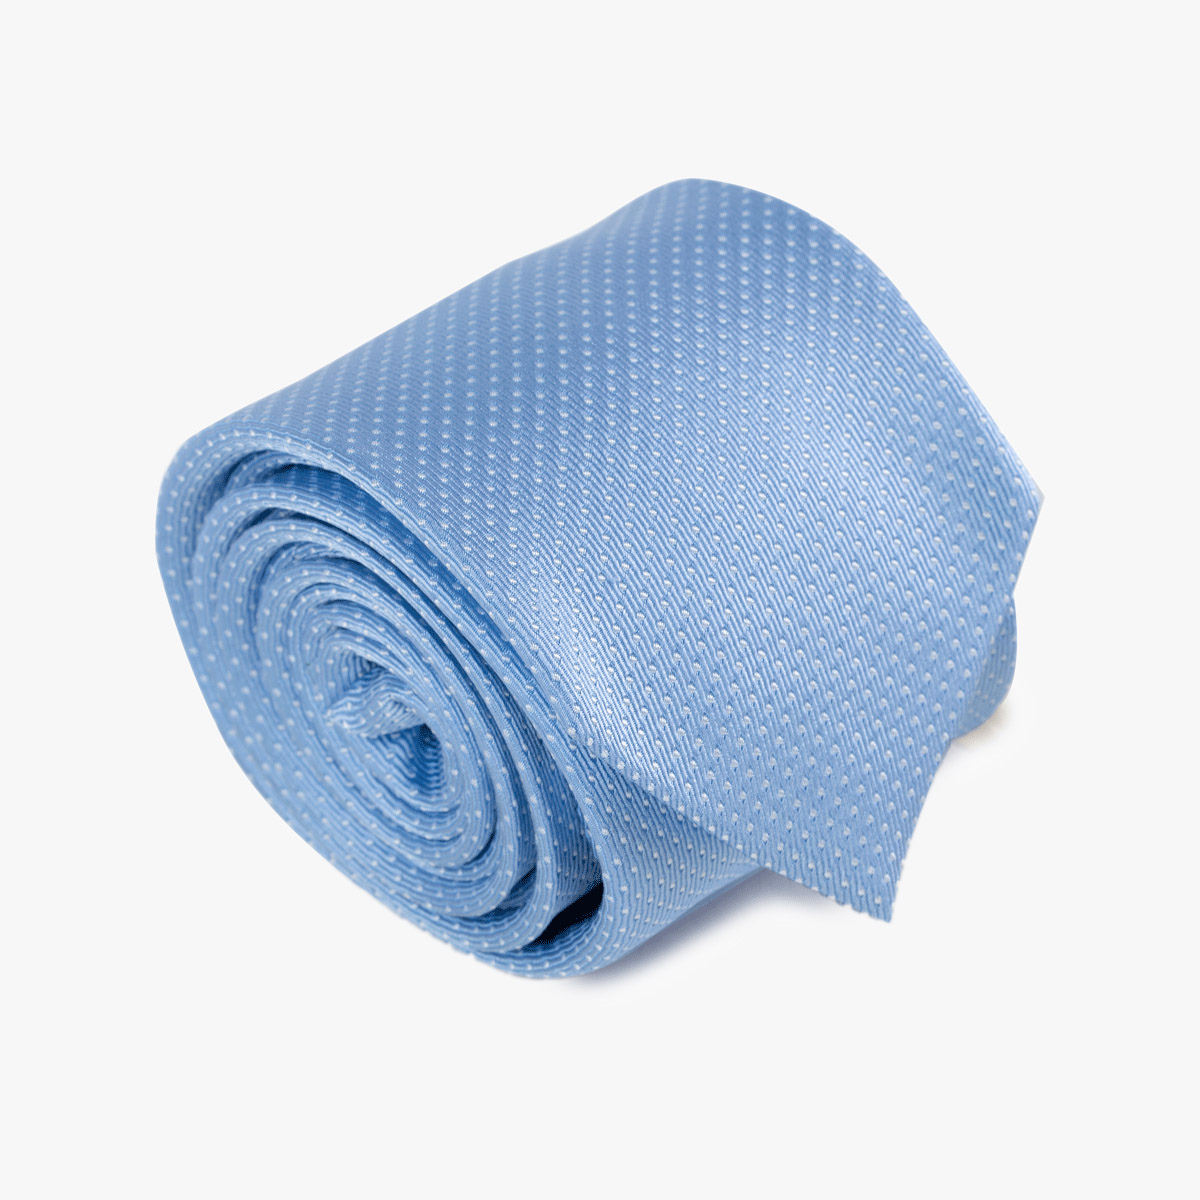 Aufgerollte Krawatte mit feinen Punkten in hellblau